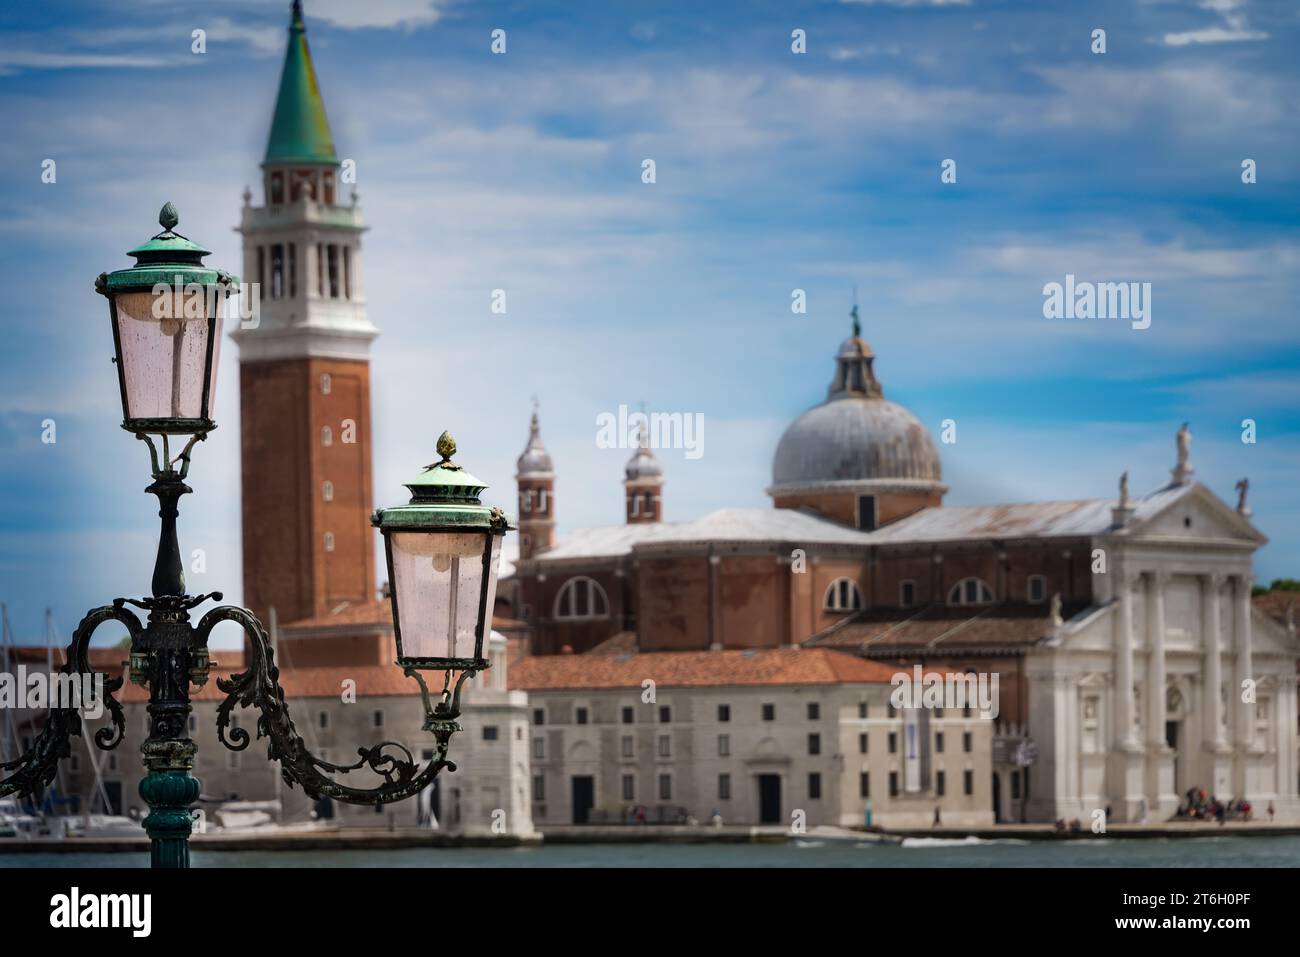 Laternenpfahl im alten venezianischen Stil mit einer Basilika im Hintergrund. Stockfoto